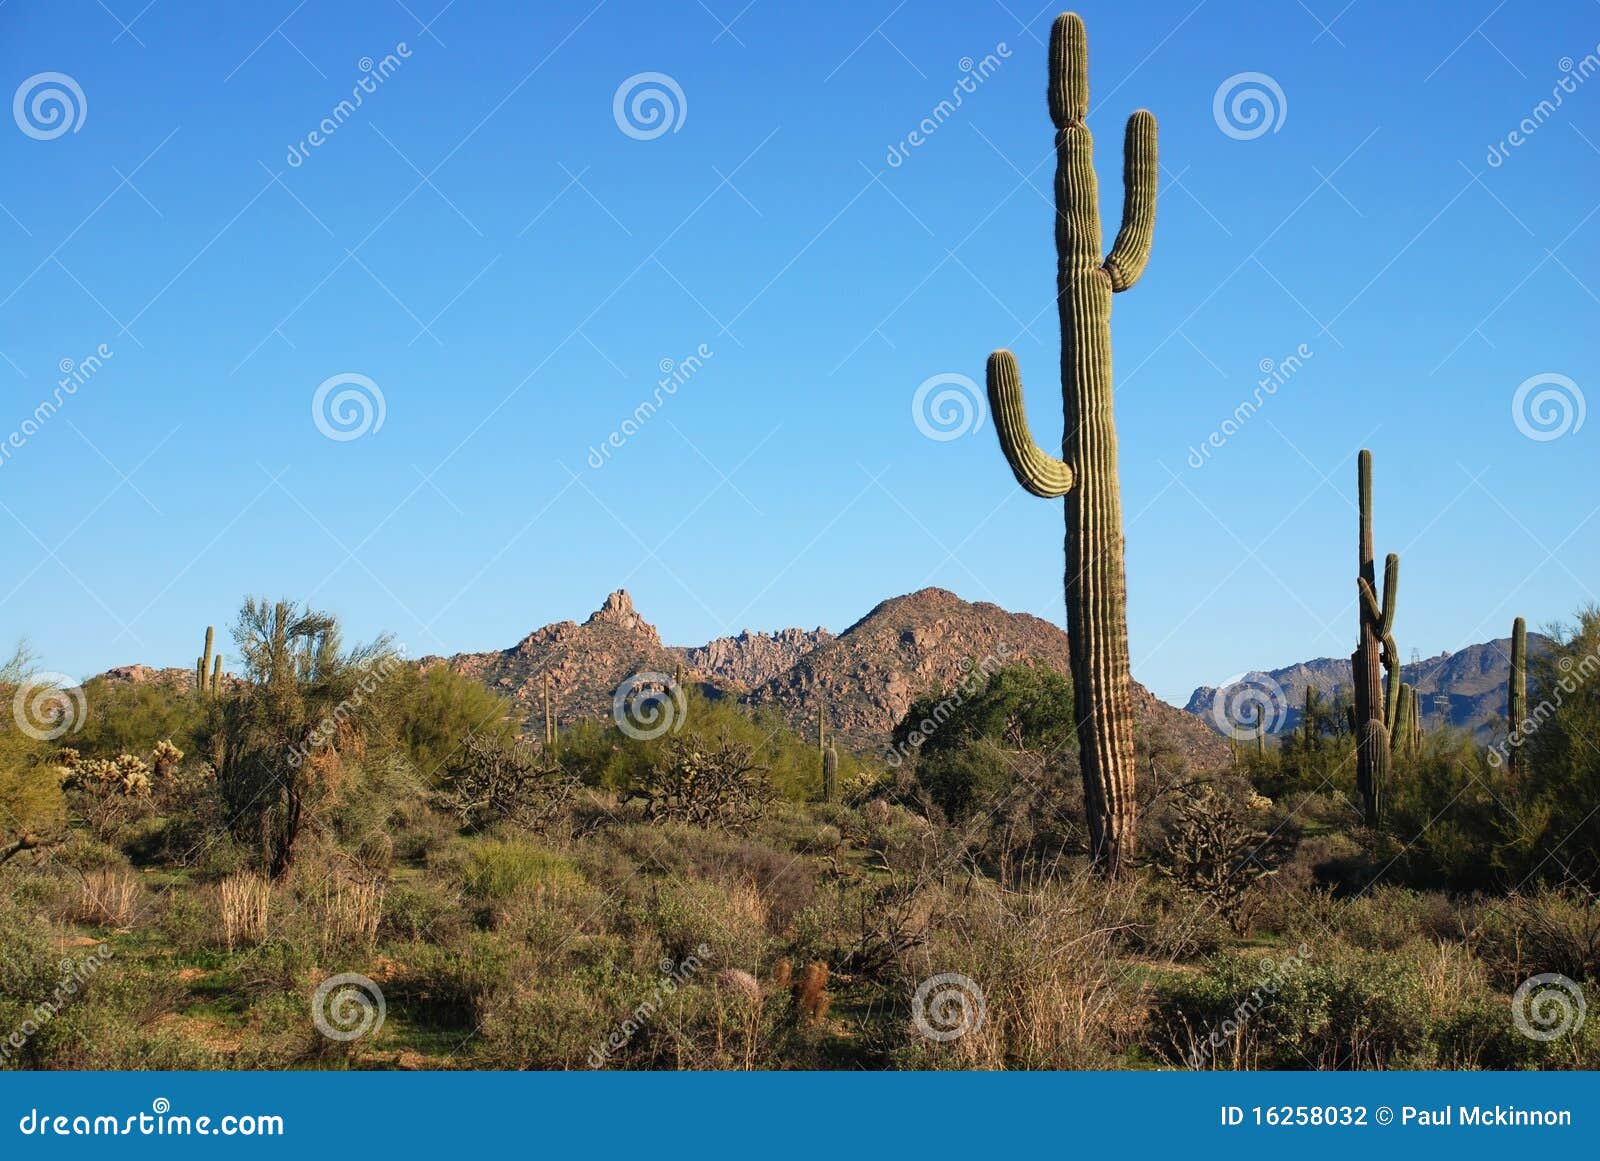 arizona desert terrain.